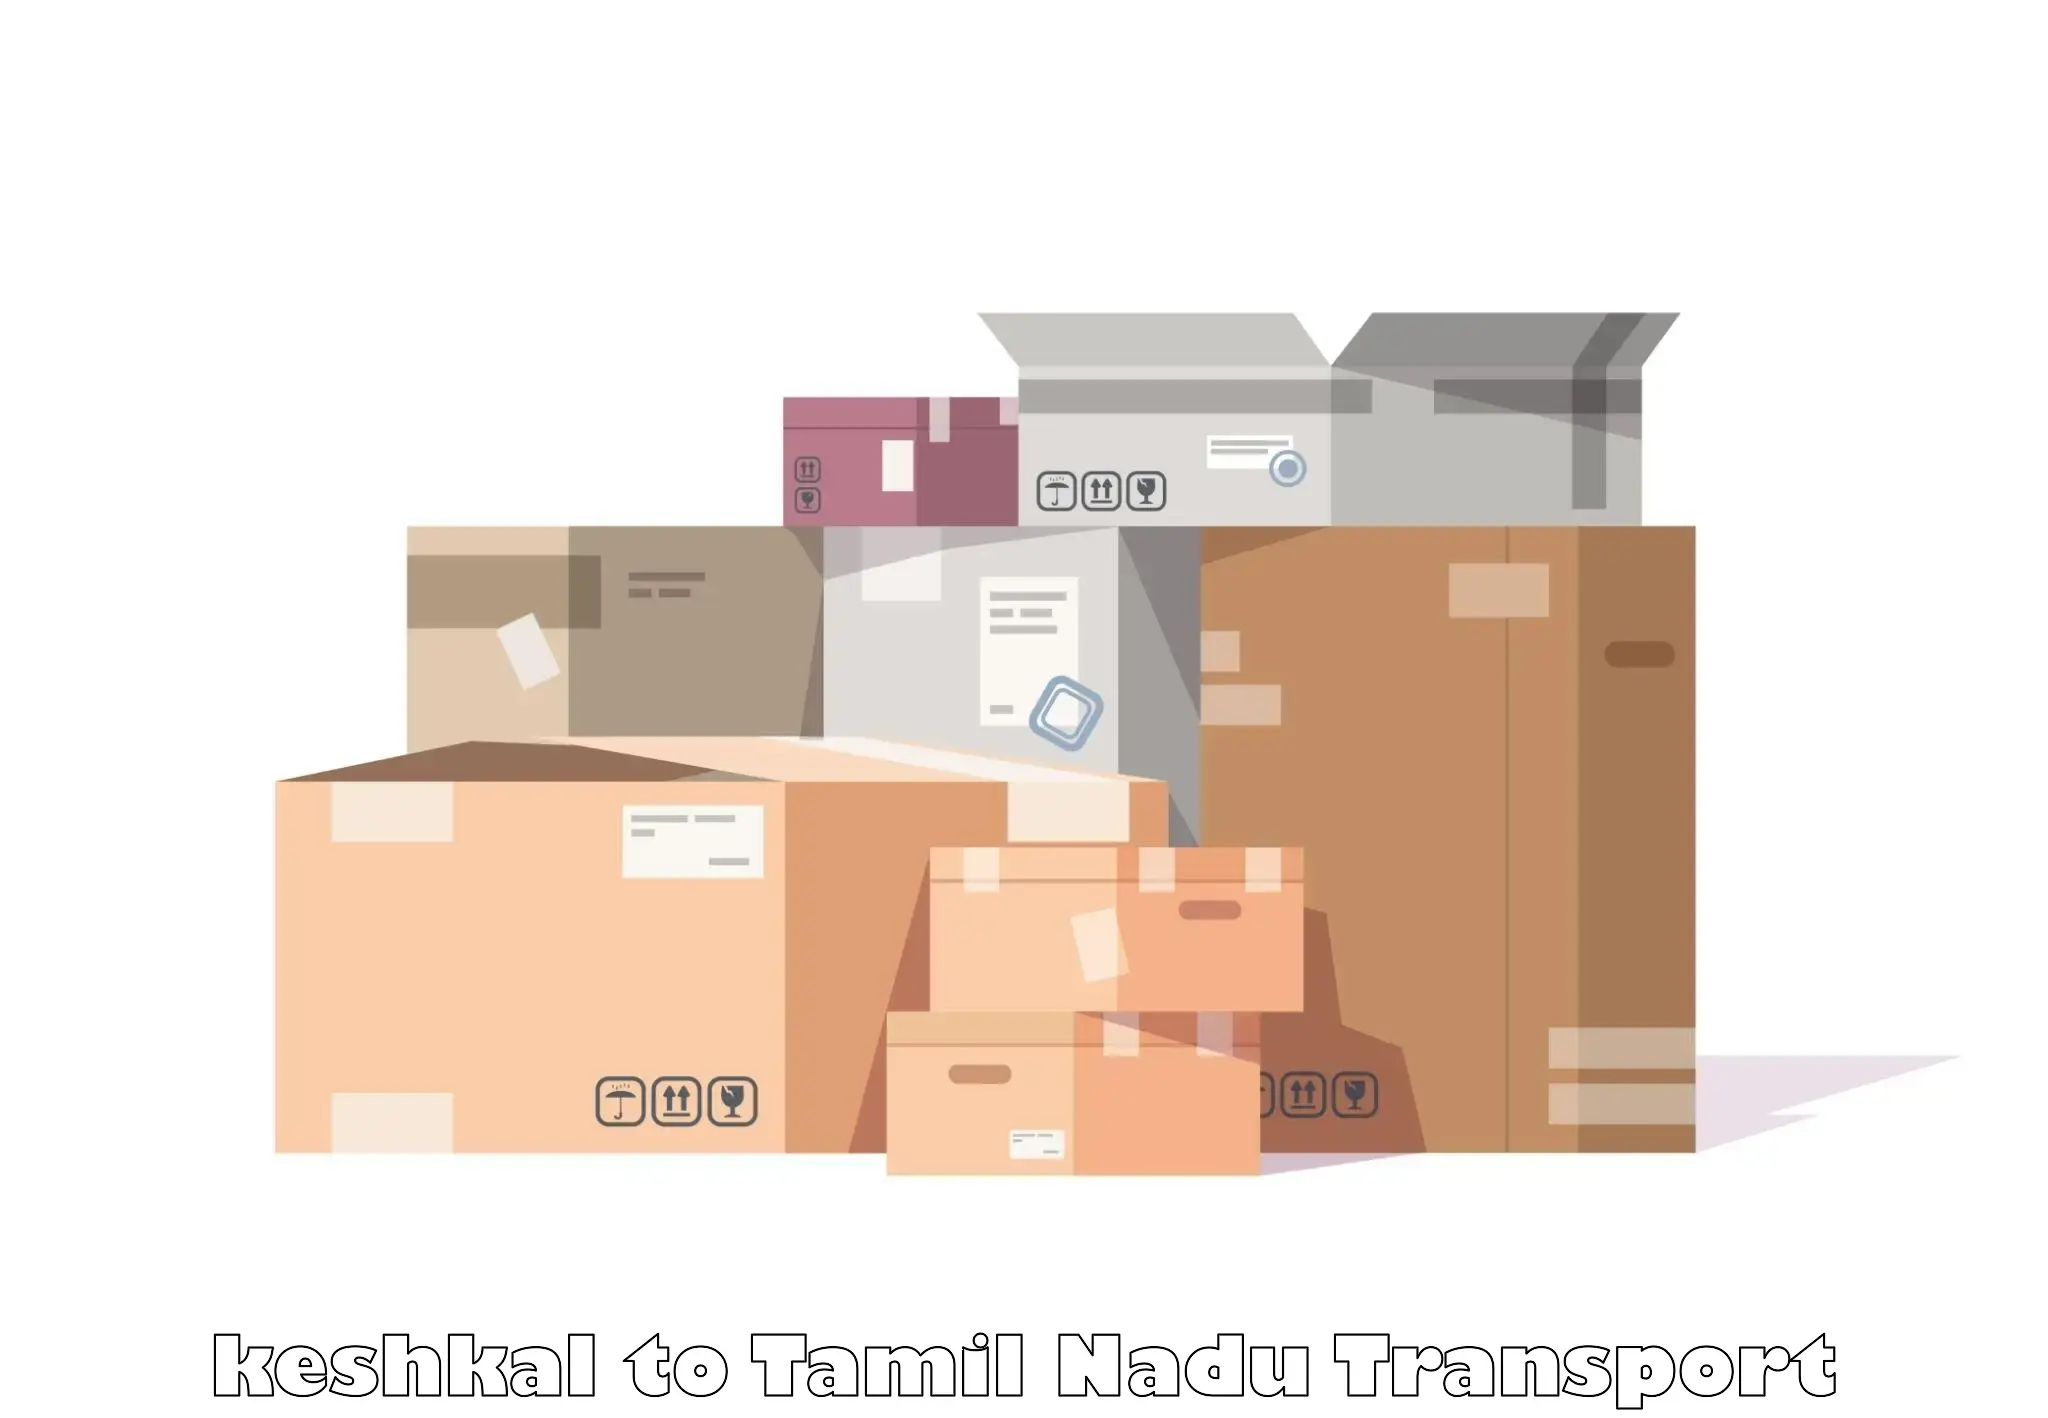 Online transport service keshkal to Madurai